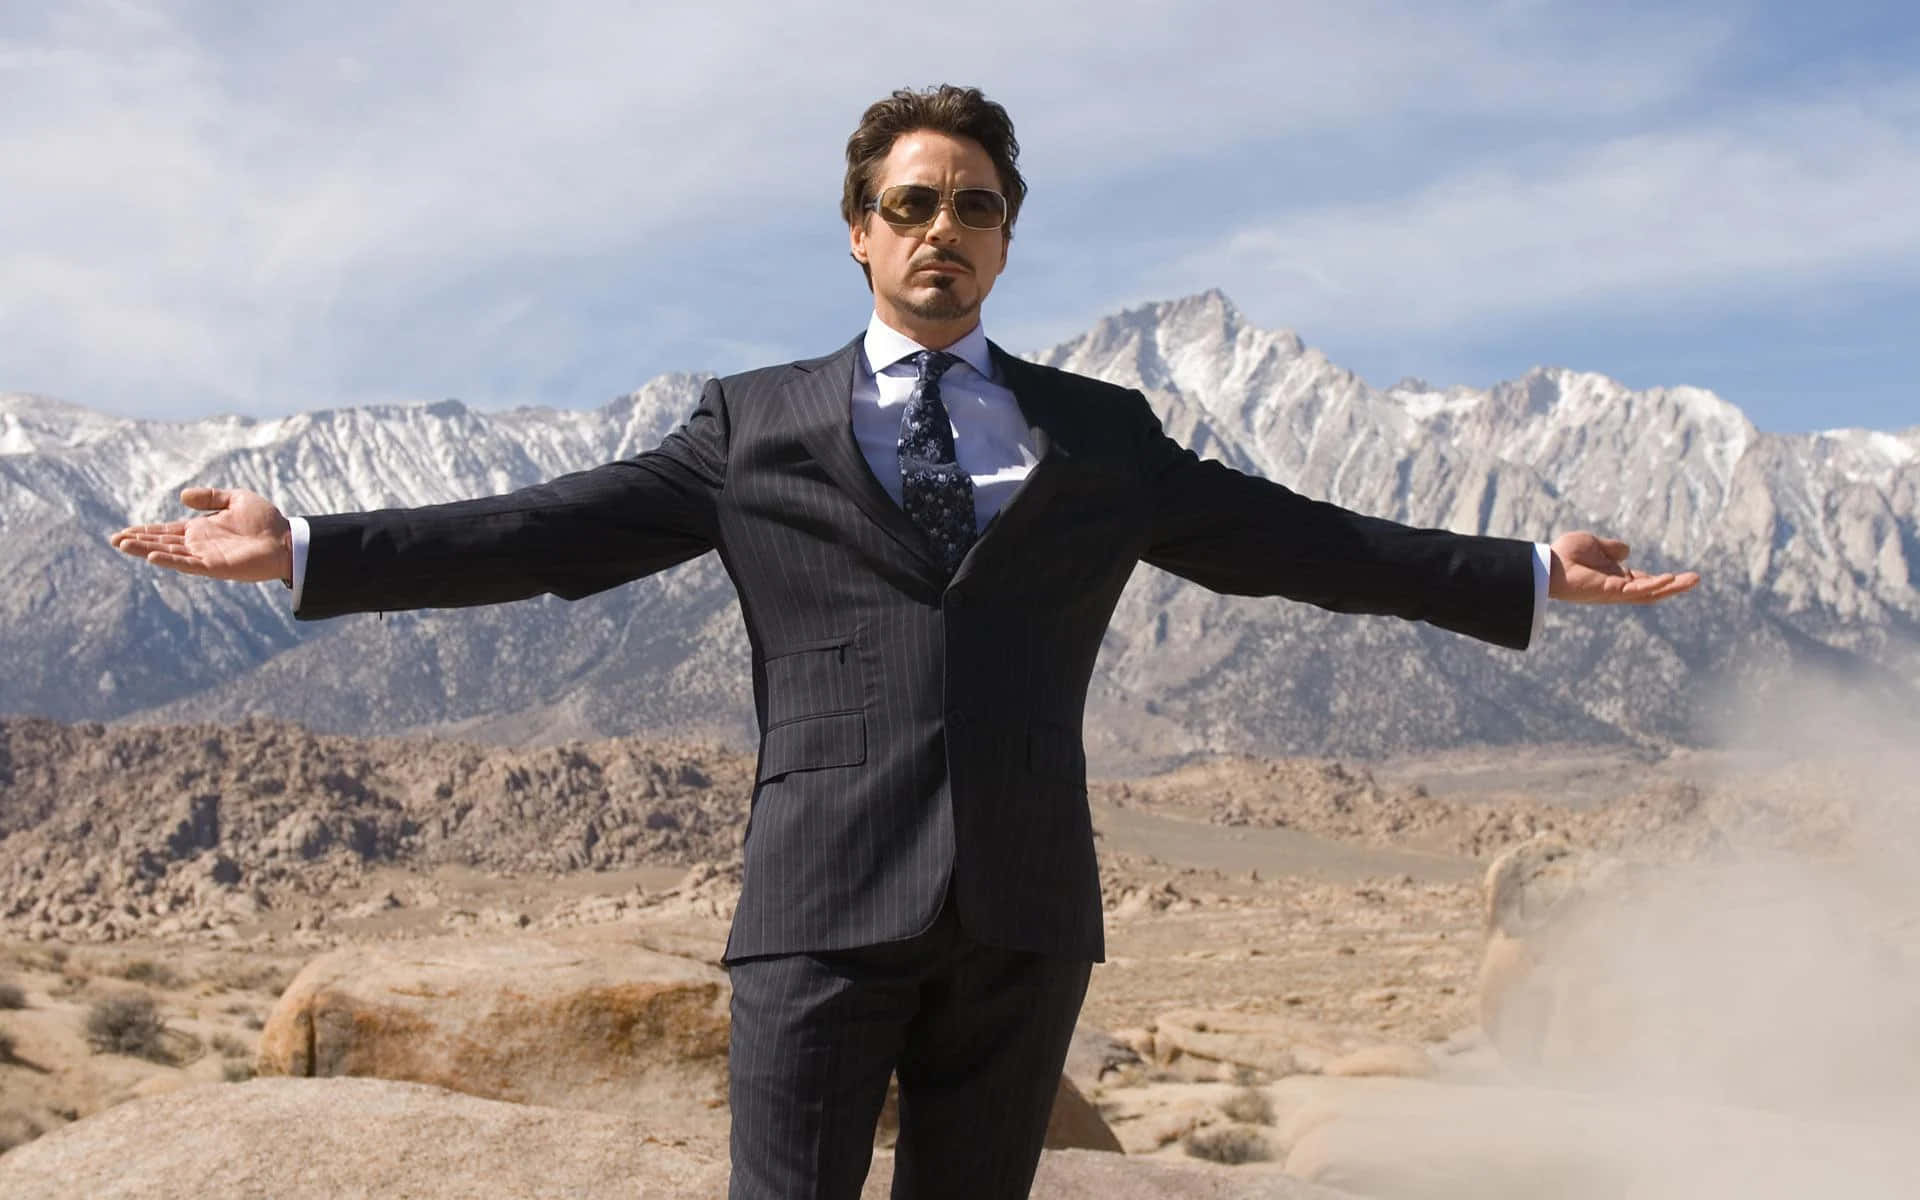 Tony Stark Desert Pose Background